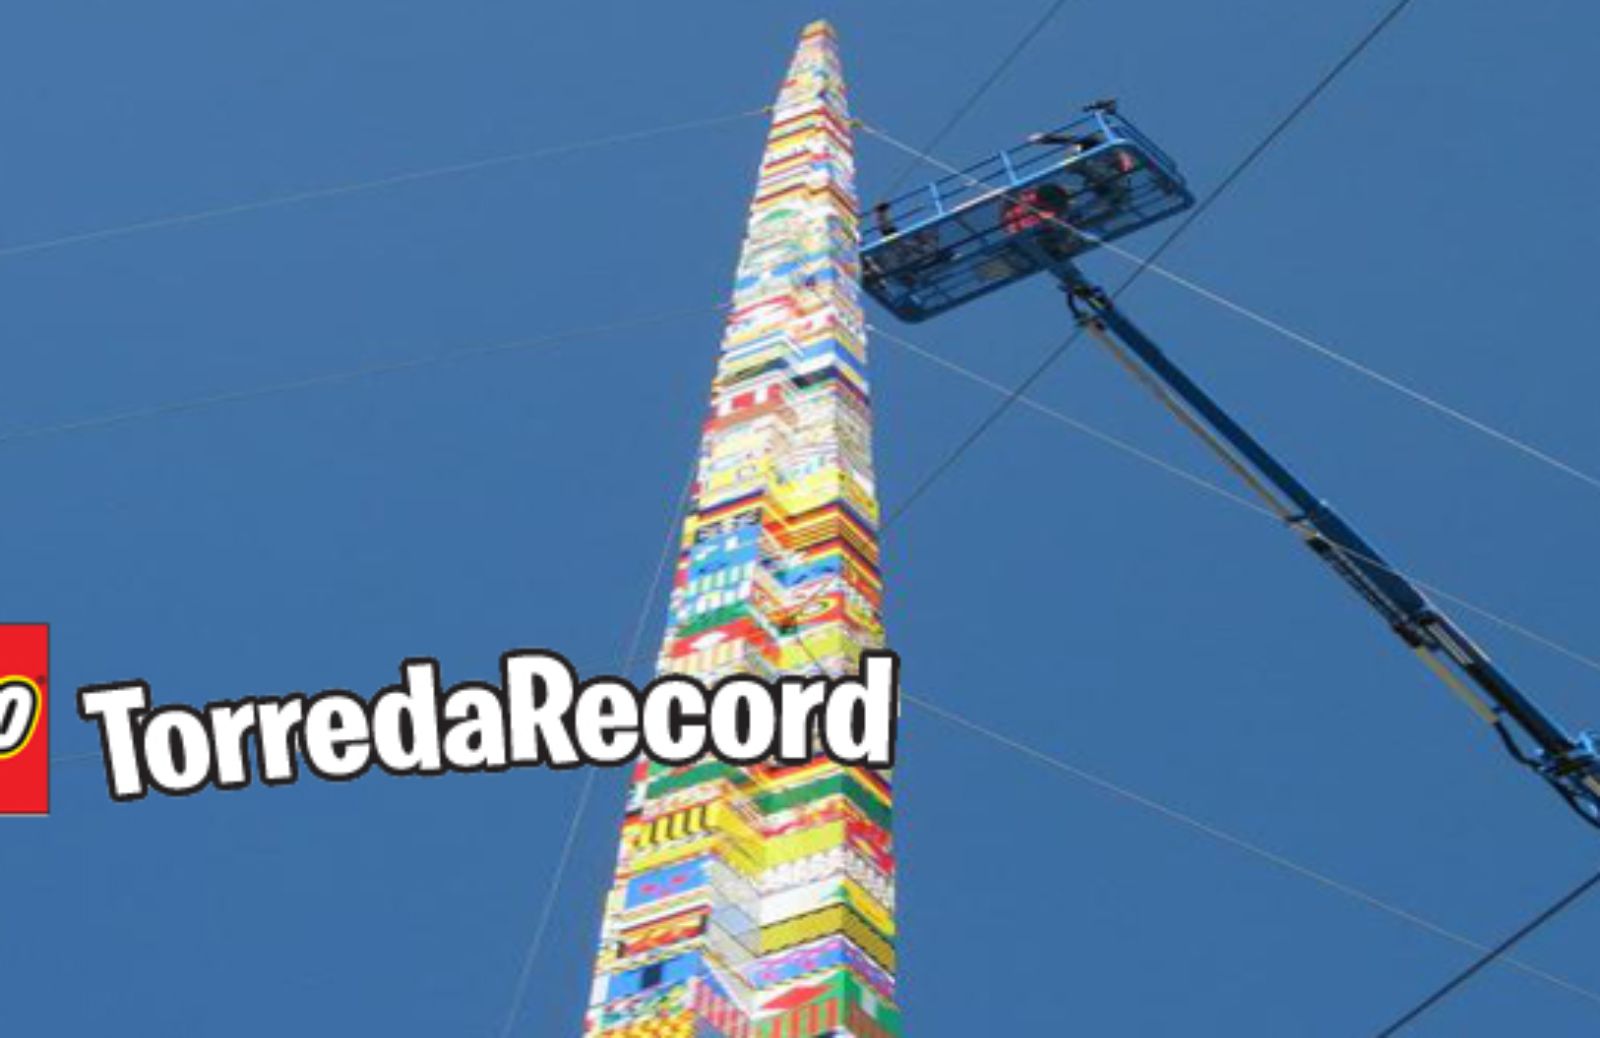 Alla Fabbrica del Vapore LEGO Record World Tower